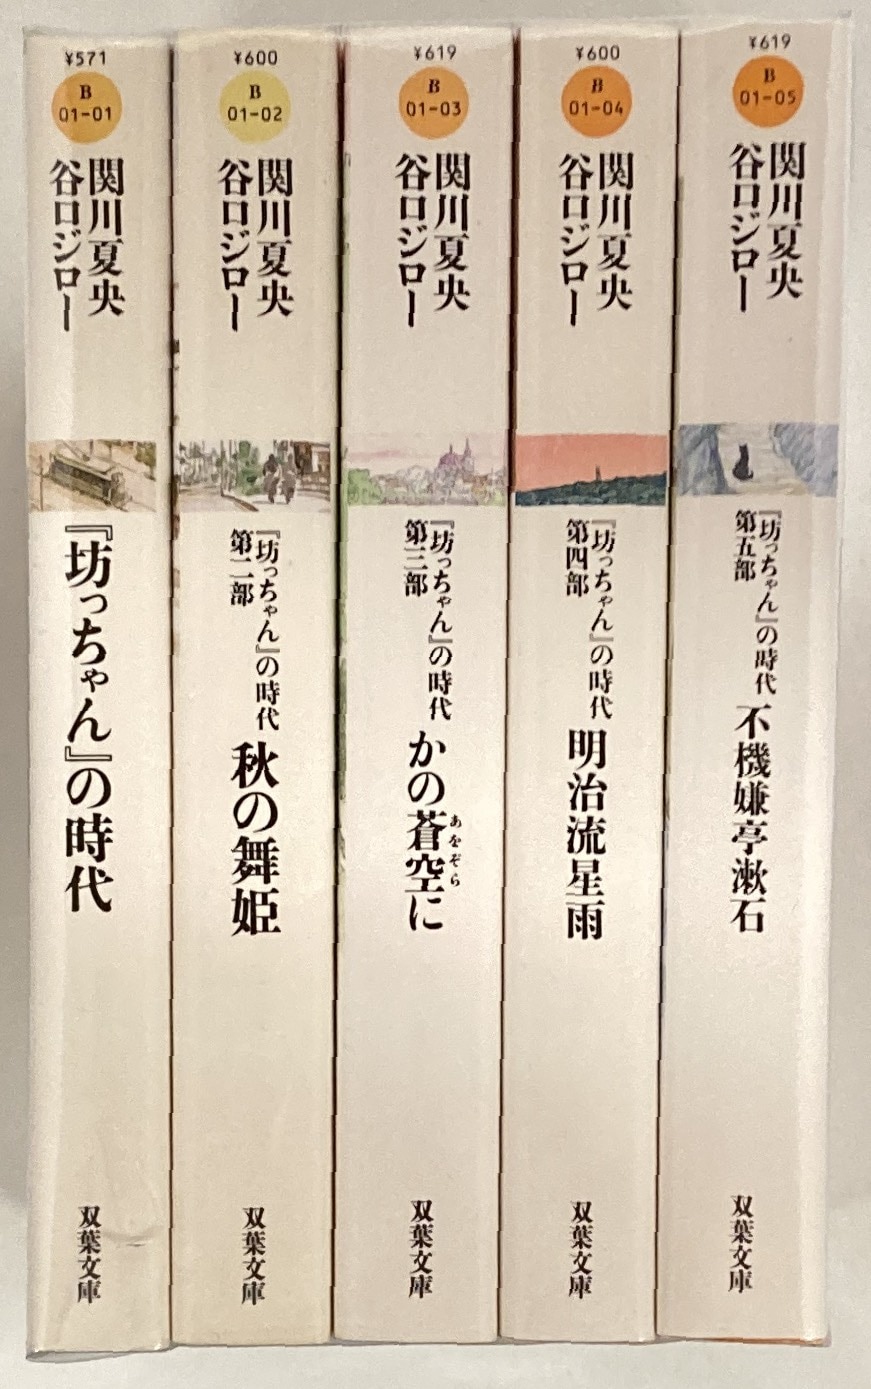 坊っちゃん』の時代 文庫版全5巻セット